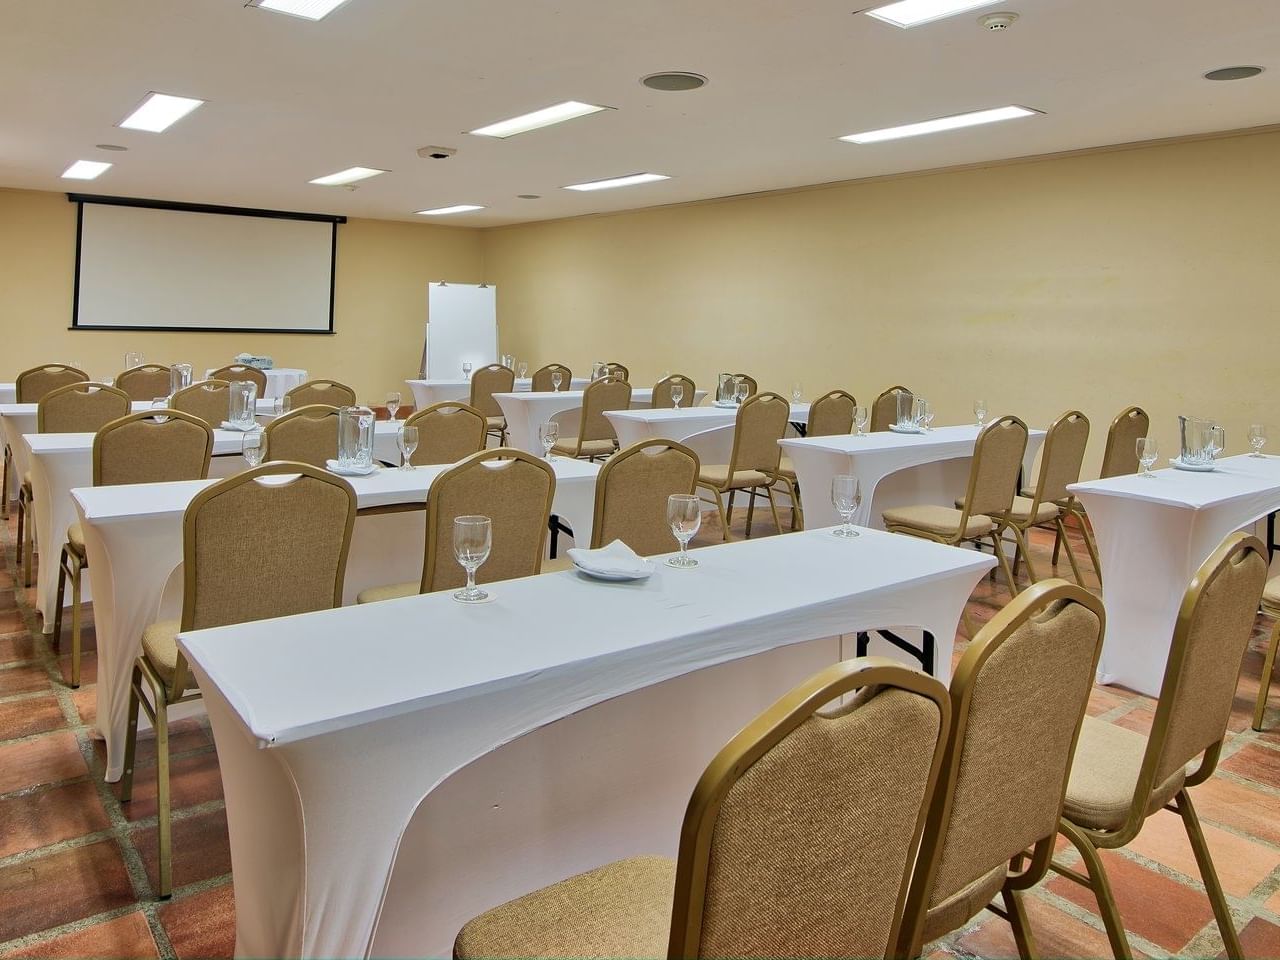 Table arrangements in Barranca Meeting room at Fiesta resort